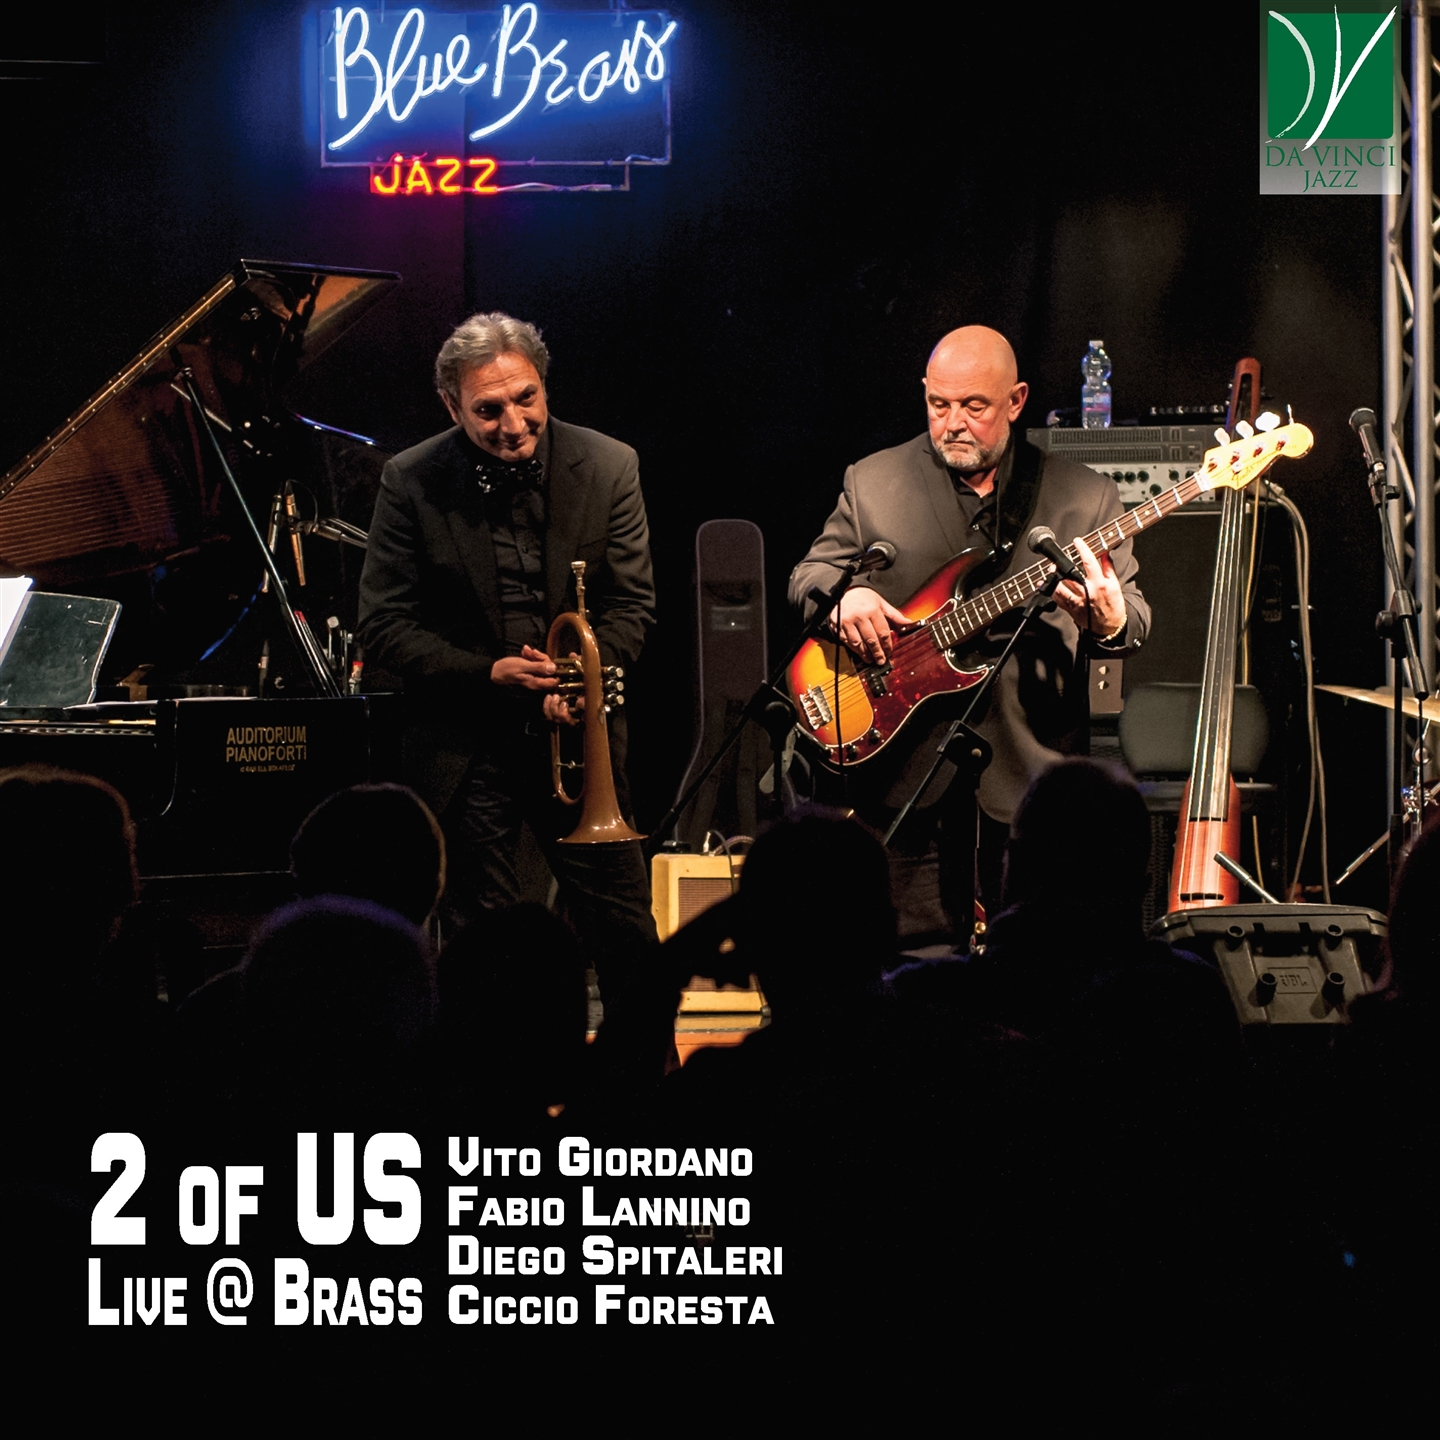 Fabio Lannino - 2 Of Us Live @Brass - Imagen 1 de 1